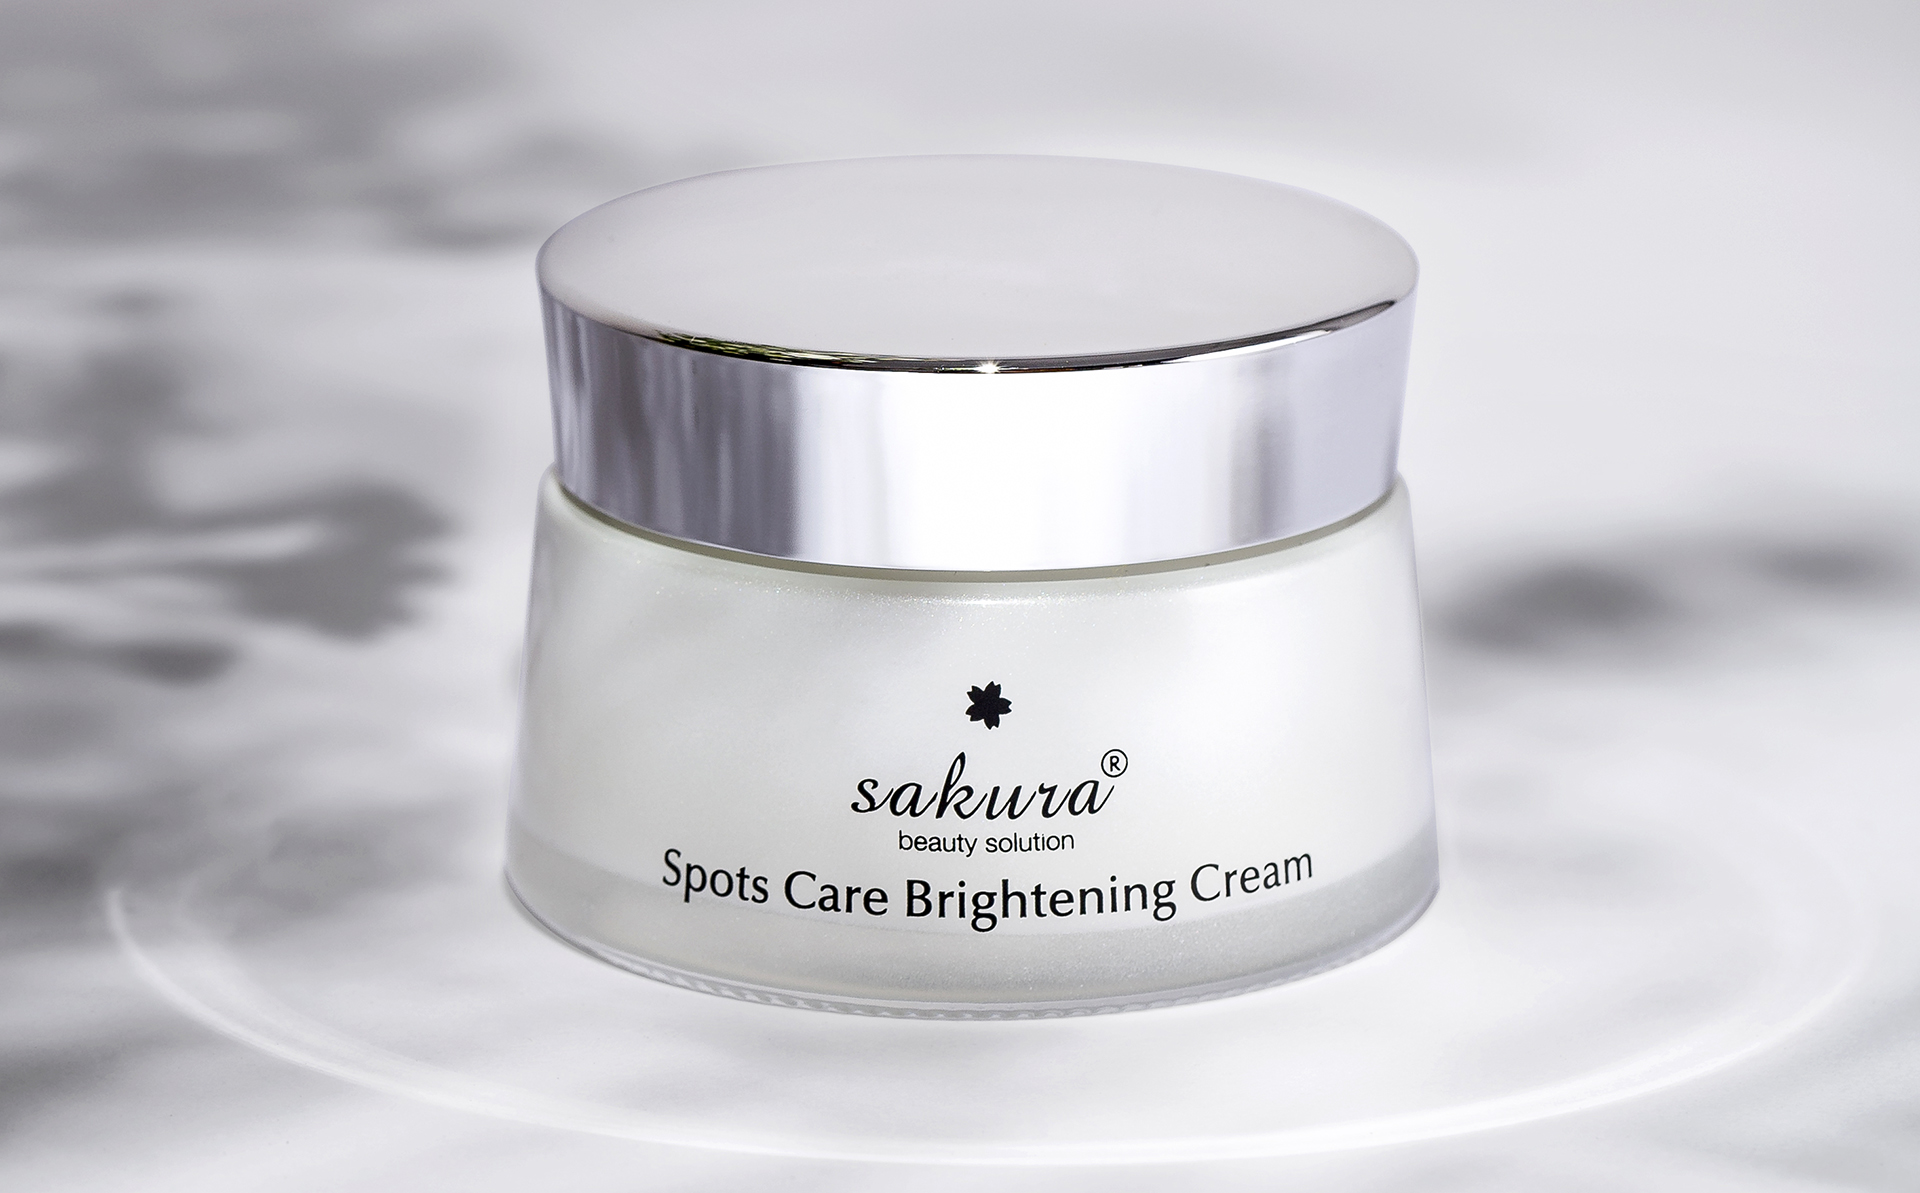 Review Spots Care Brightening Cream - kem dưỡng trắng, ngăn ngừa sạm nám  được hội chị em săn lùng